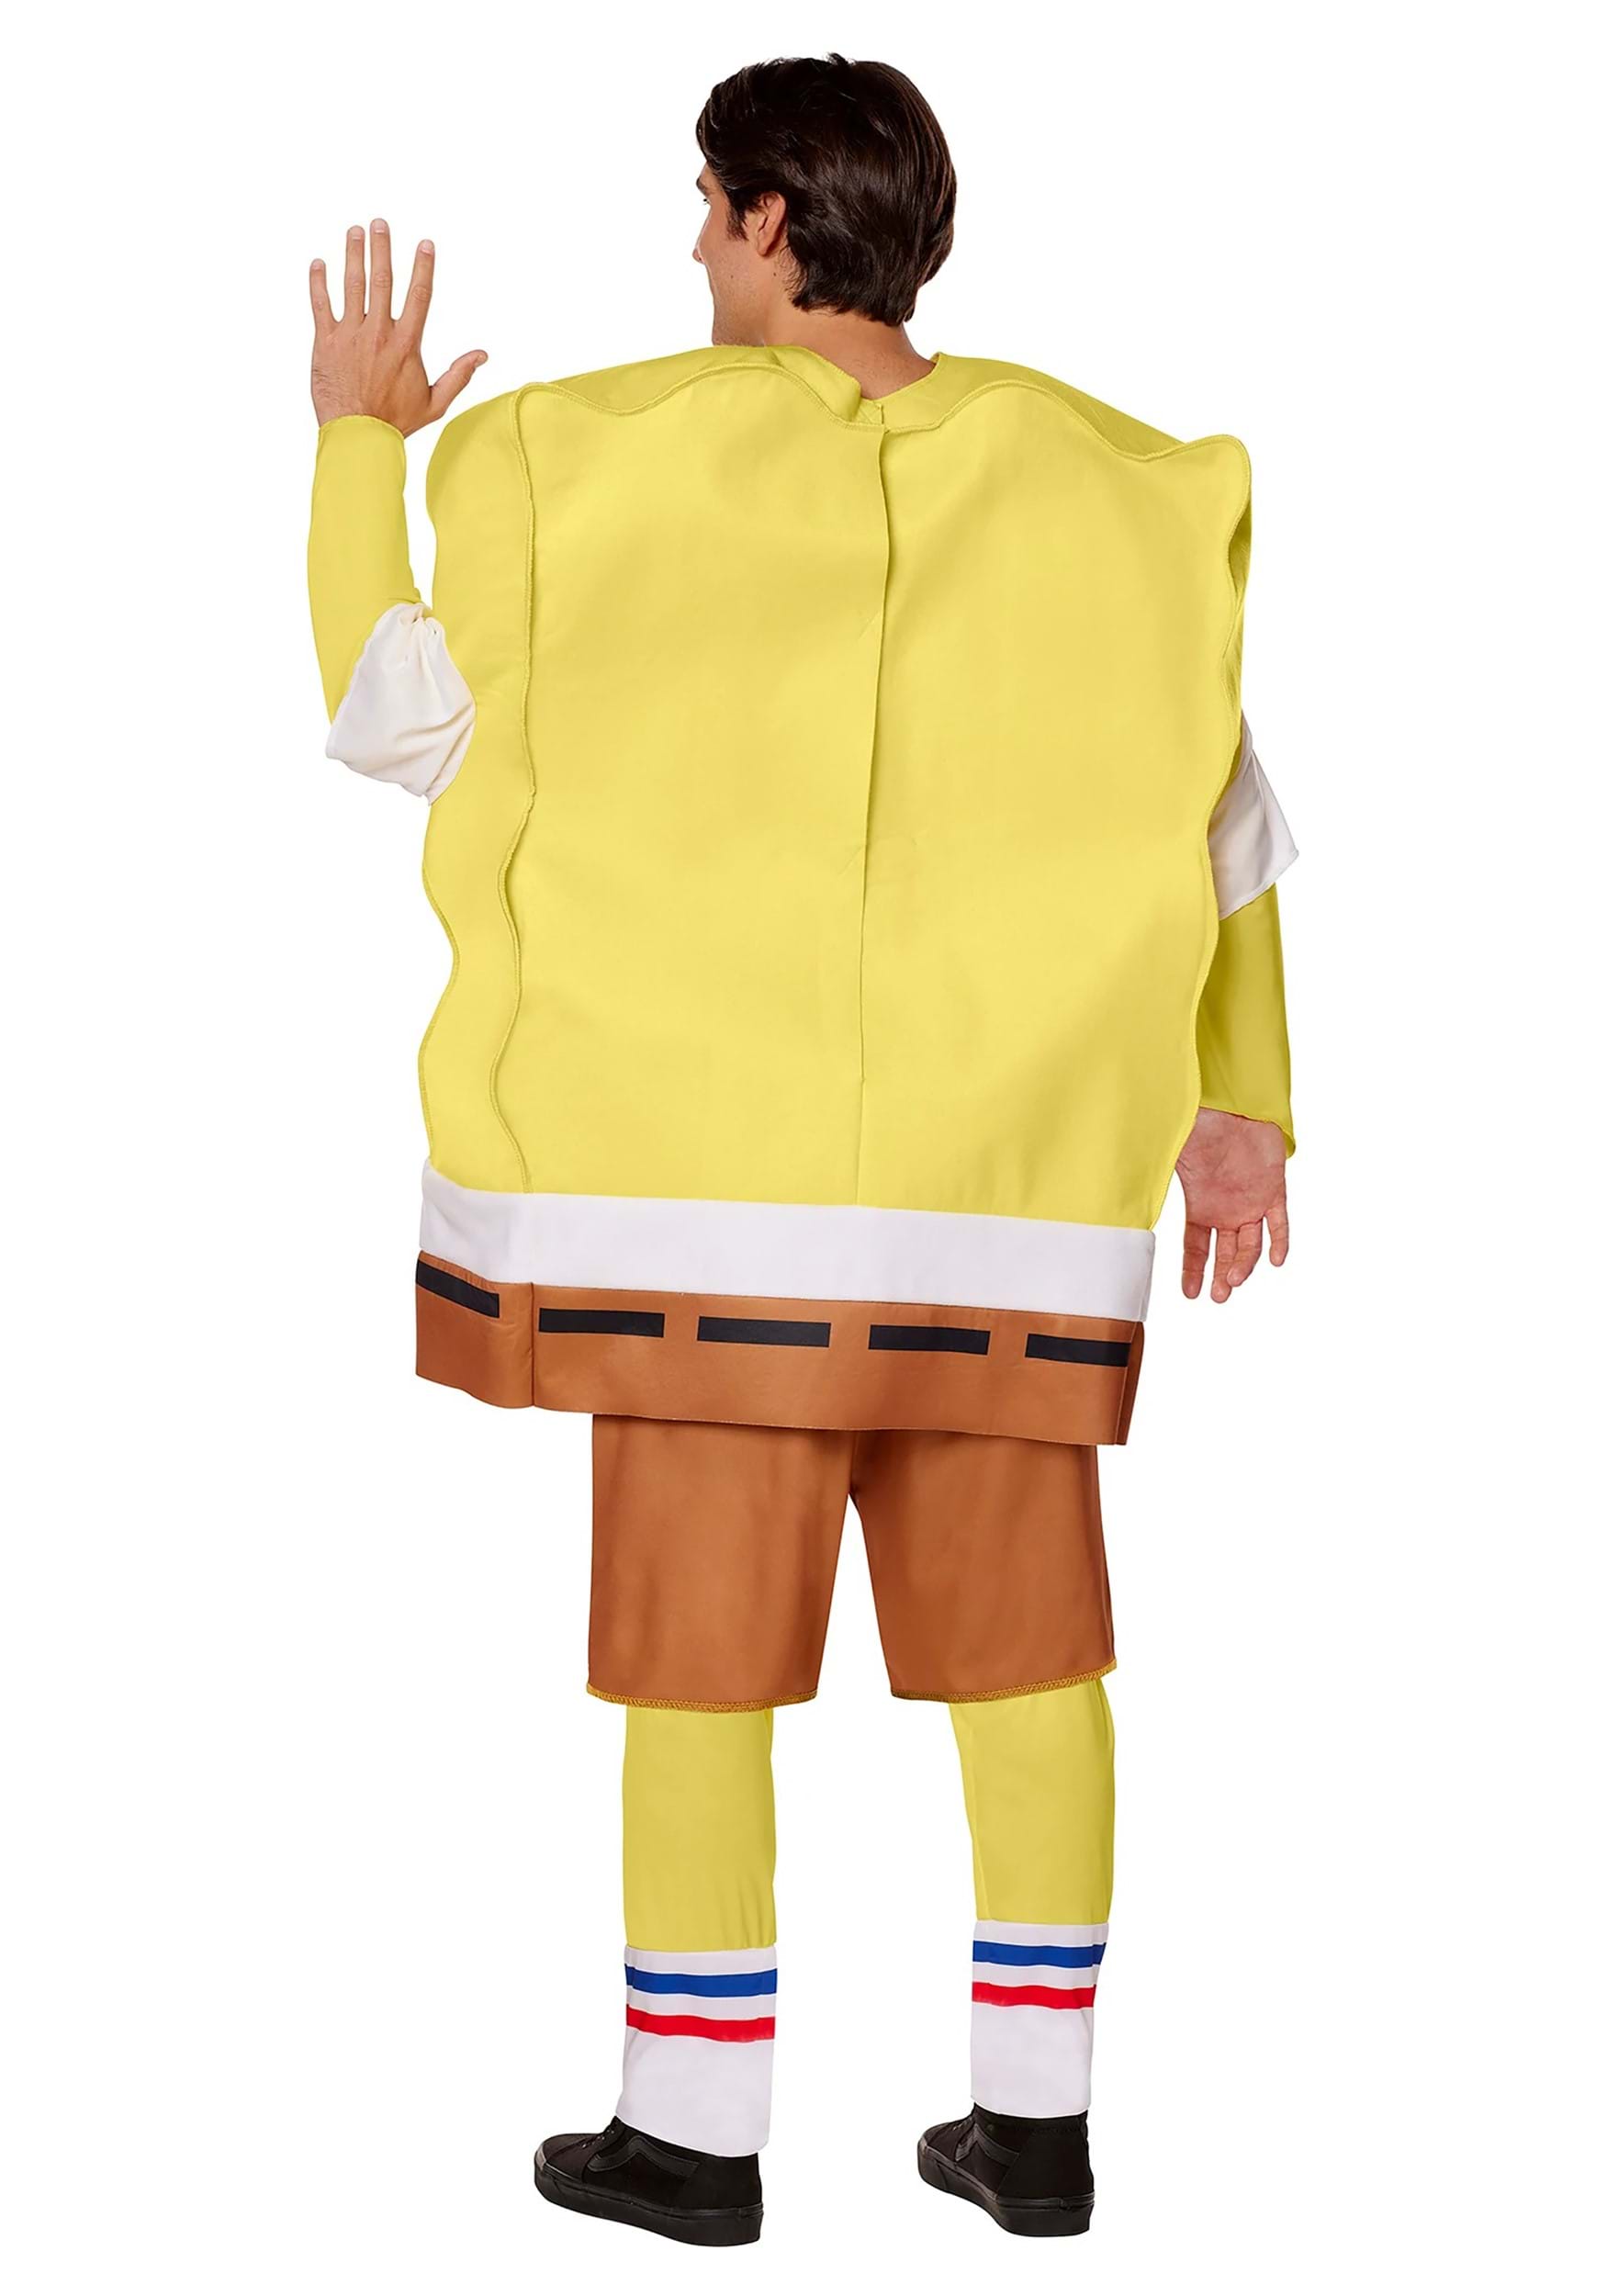 SpongeBob SquarePants Adult Costume